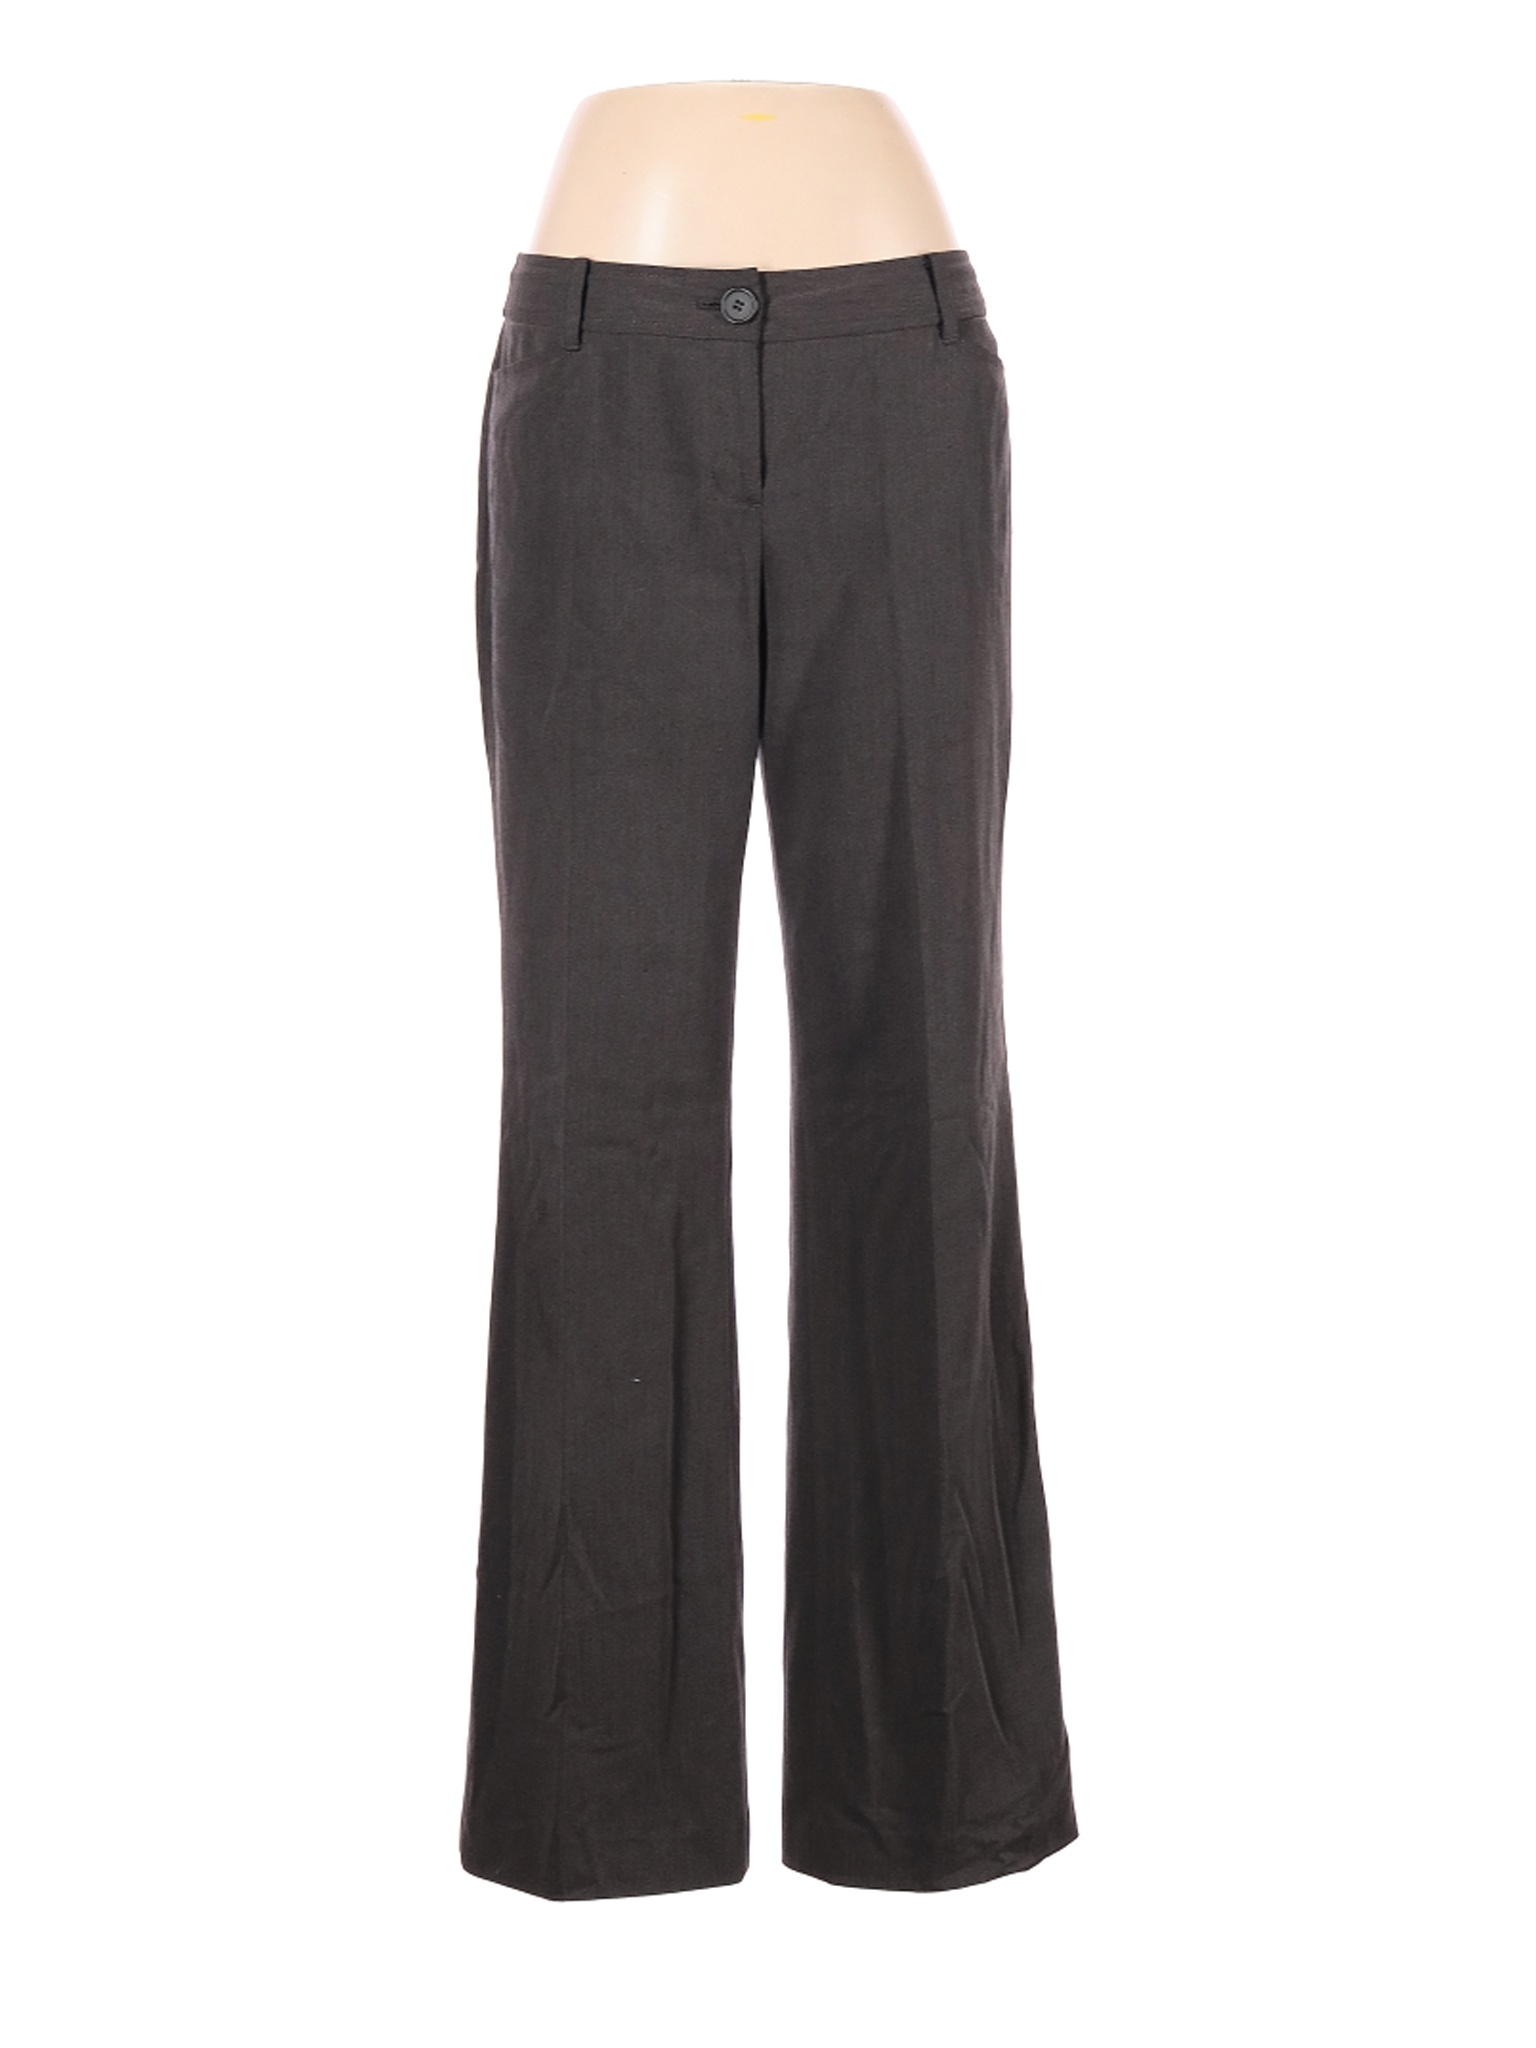 Ann Taylor LOFT Women Gray Dress Pants 6 | eBay